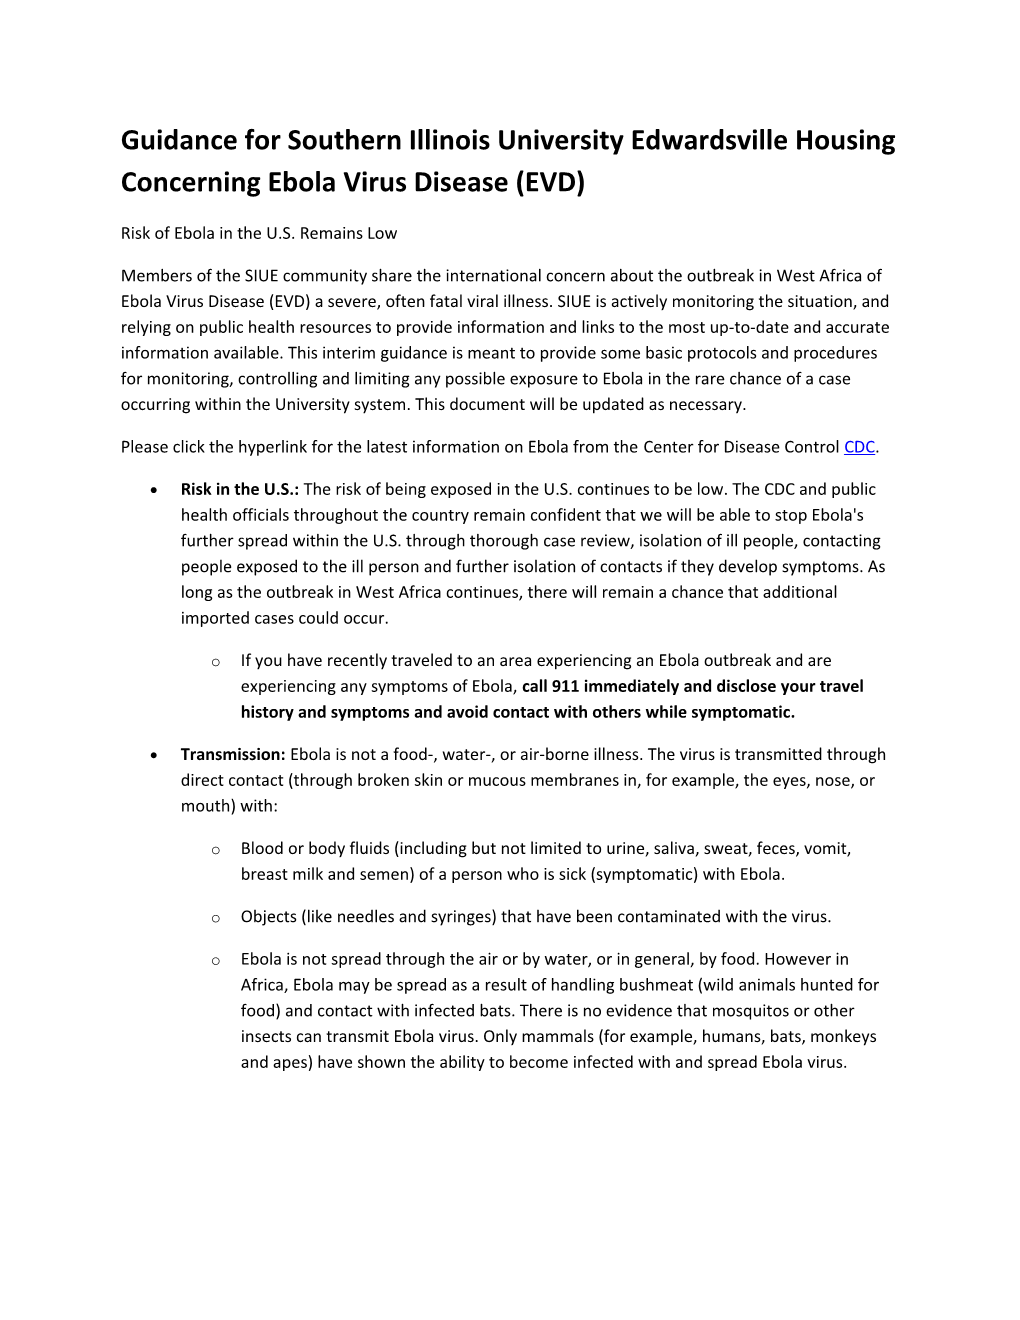 Guidance for Southern Illinois University Edwardsville Housing Concerning Ebola Virus